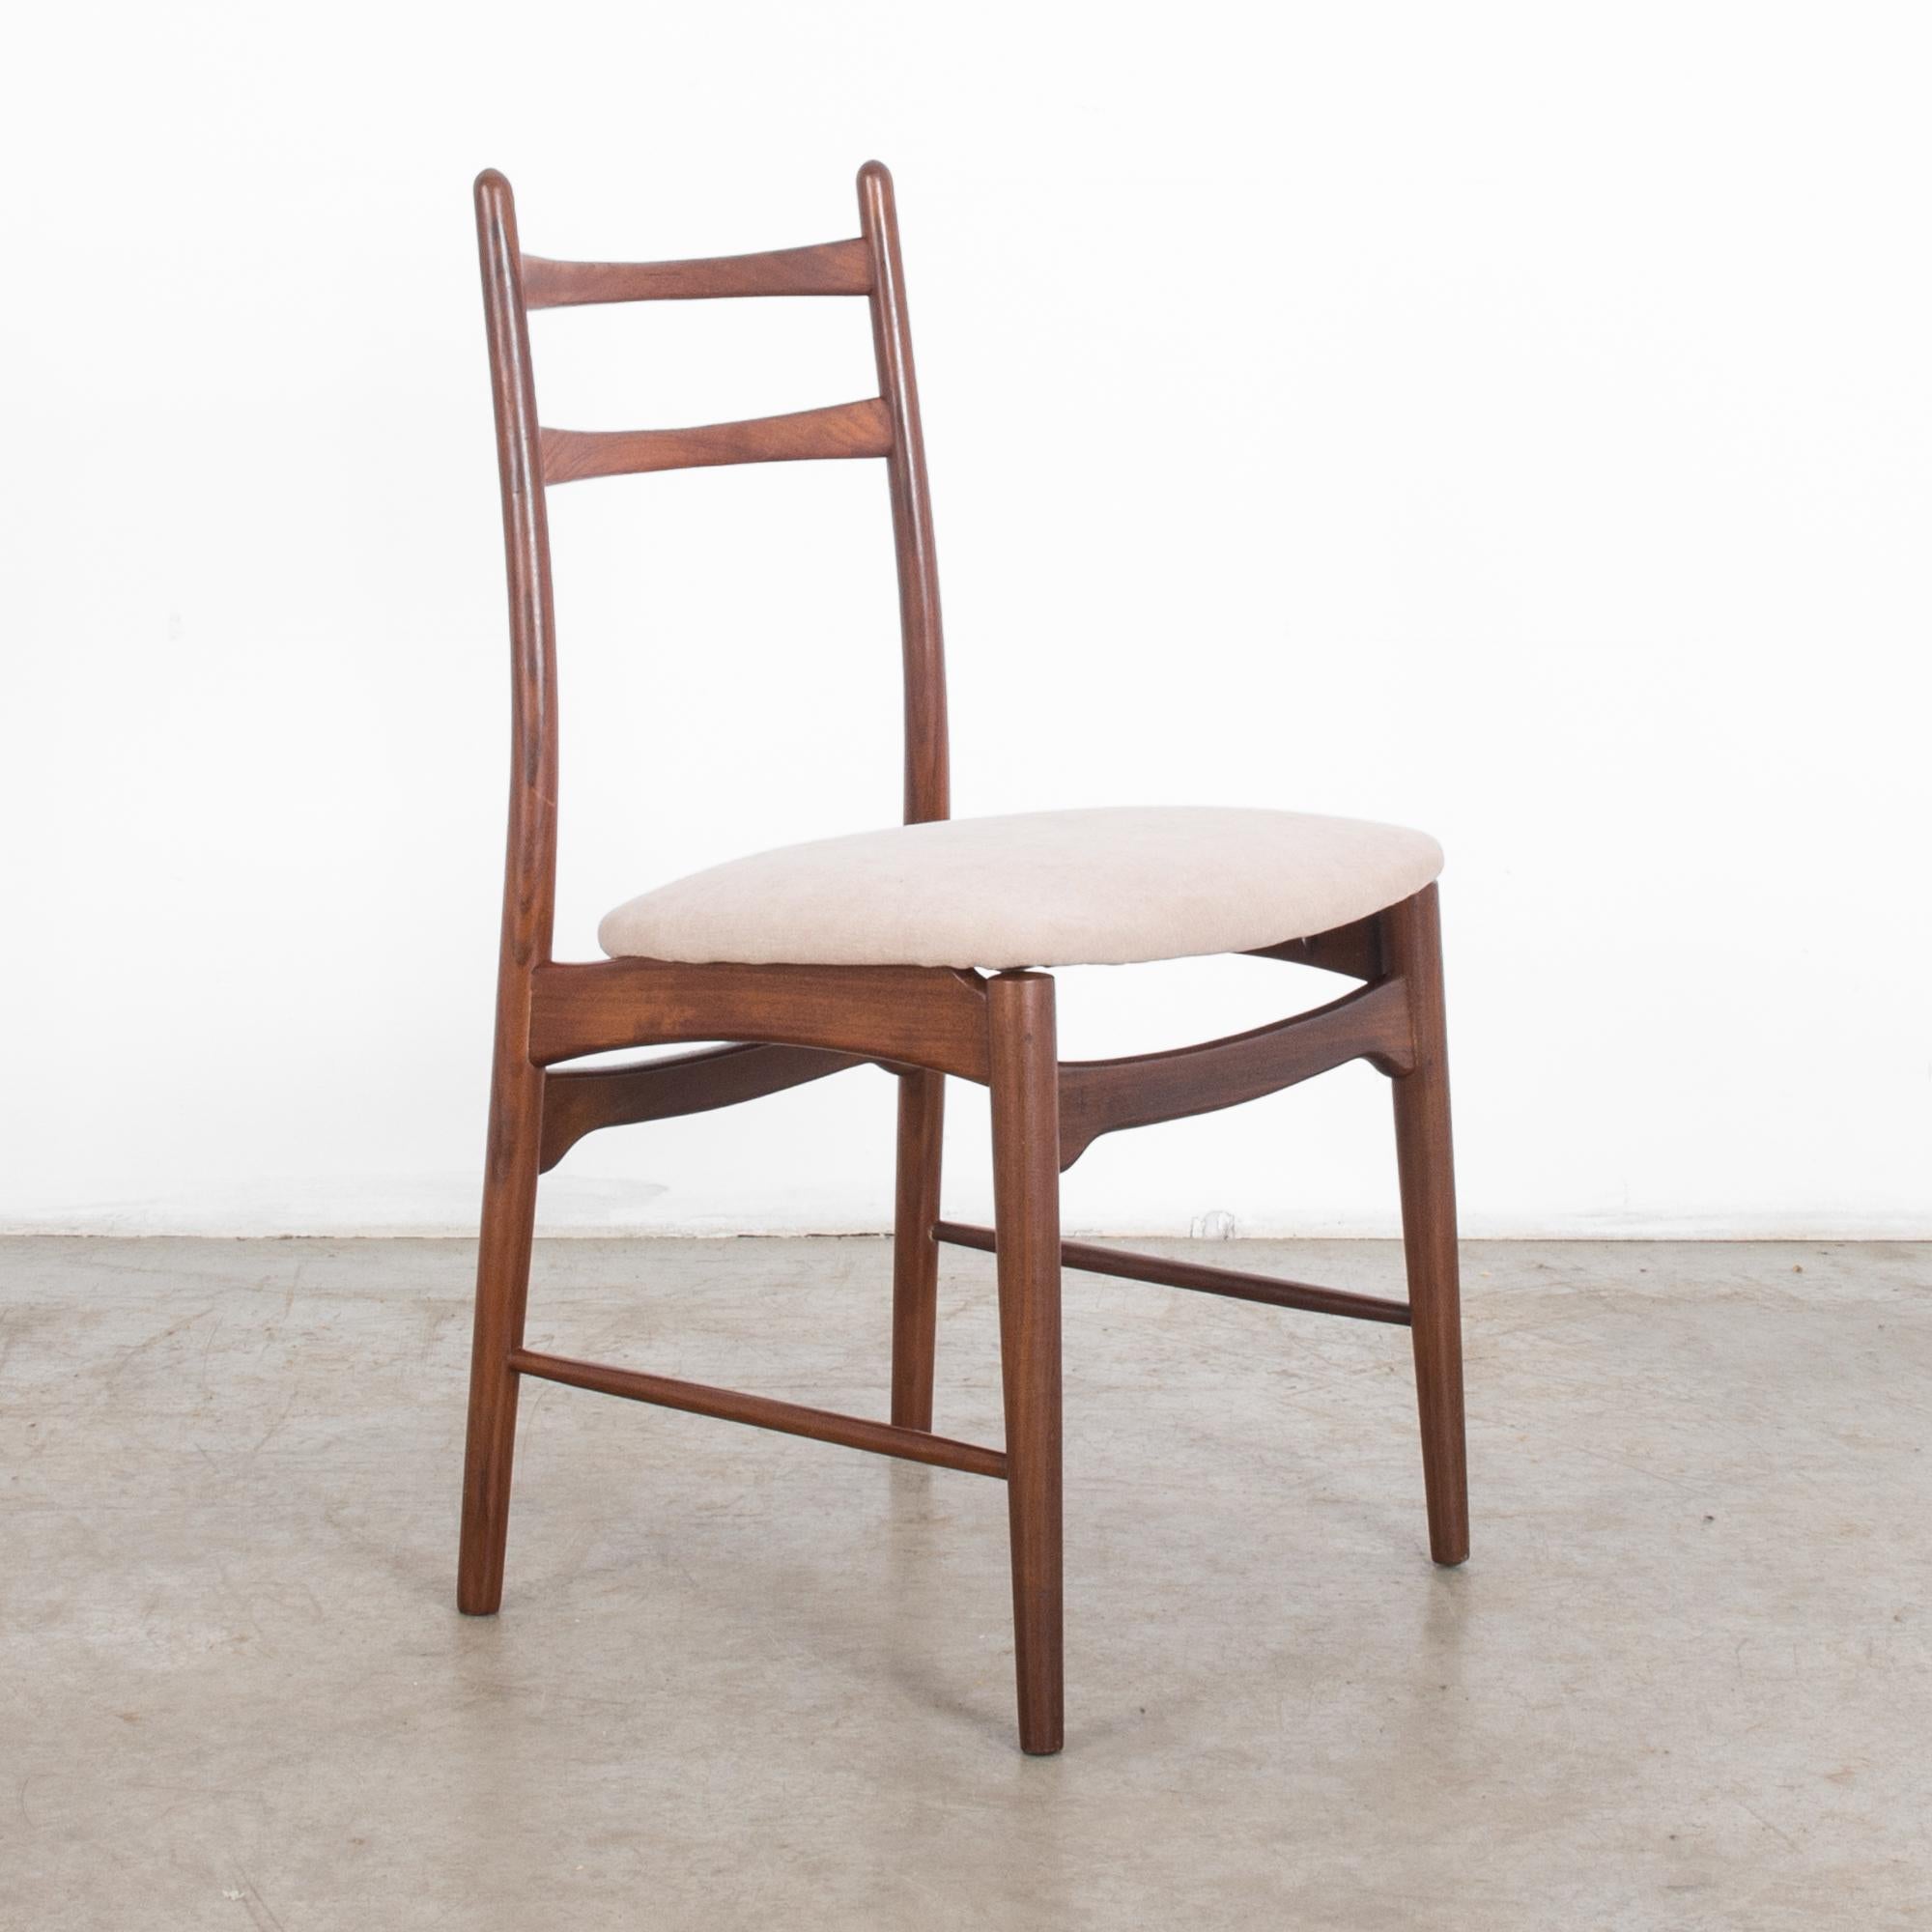 Cette chaise en teck a été fabriquée au Danemark, vers 1960. Quatre pieds fuselés, légèrement inclinés vers l'extérieur, construisent les lignes douces et nettes de ce meuble du milieu du siècle. Peut être utilisé comme chaise de bureau ou de salle